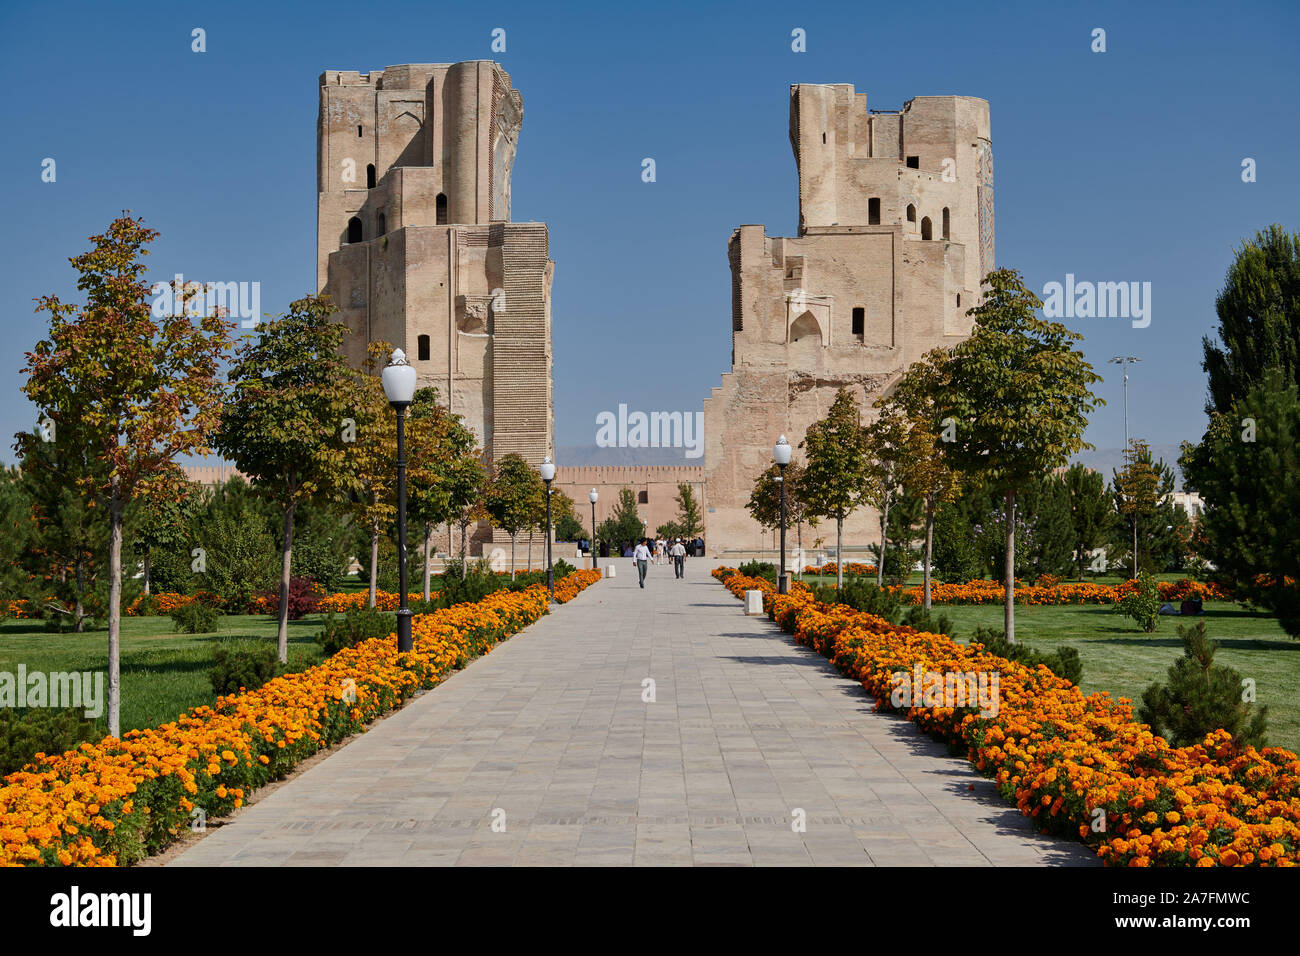 ruins of gate to Ak Saray Palace, Shahrisabz, Uzbekistan, Central Asia Stock Photo